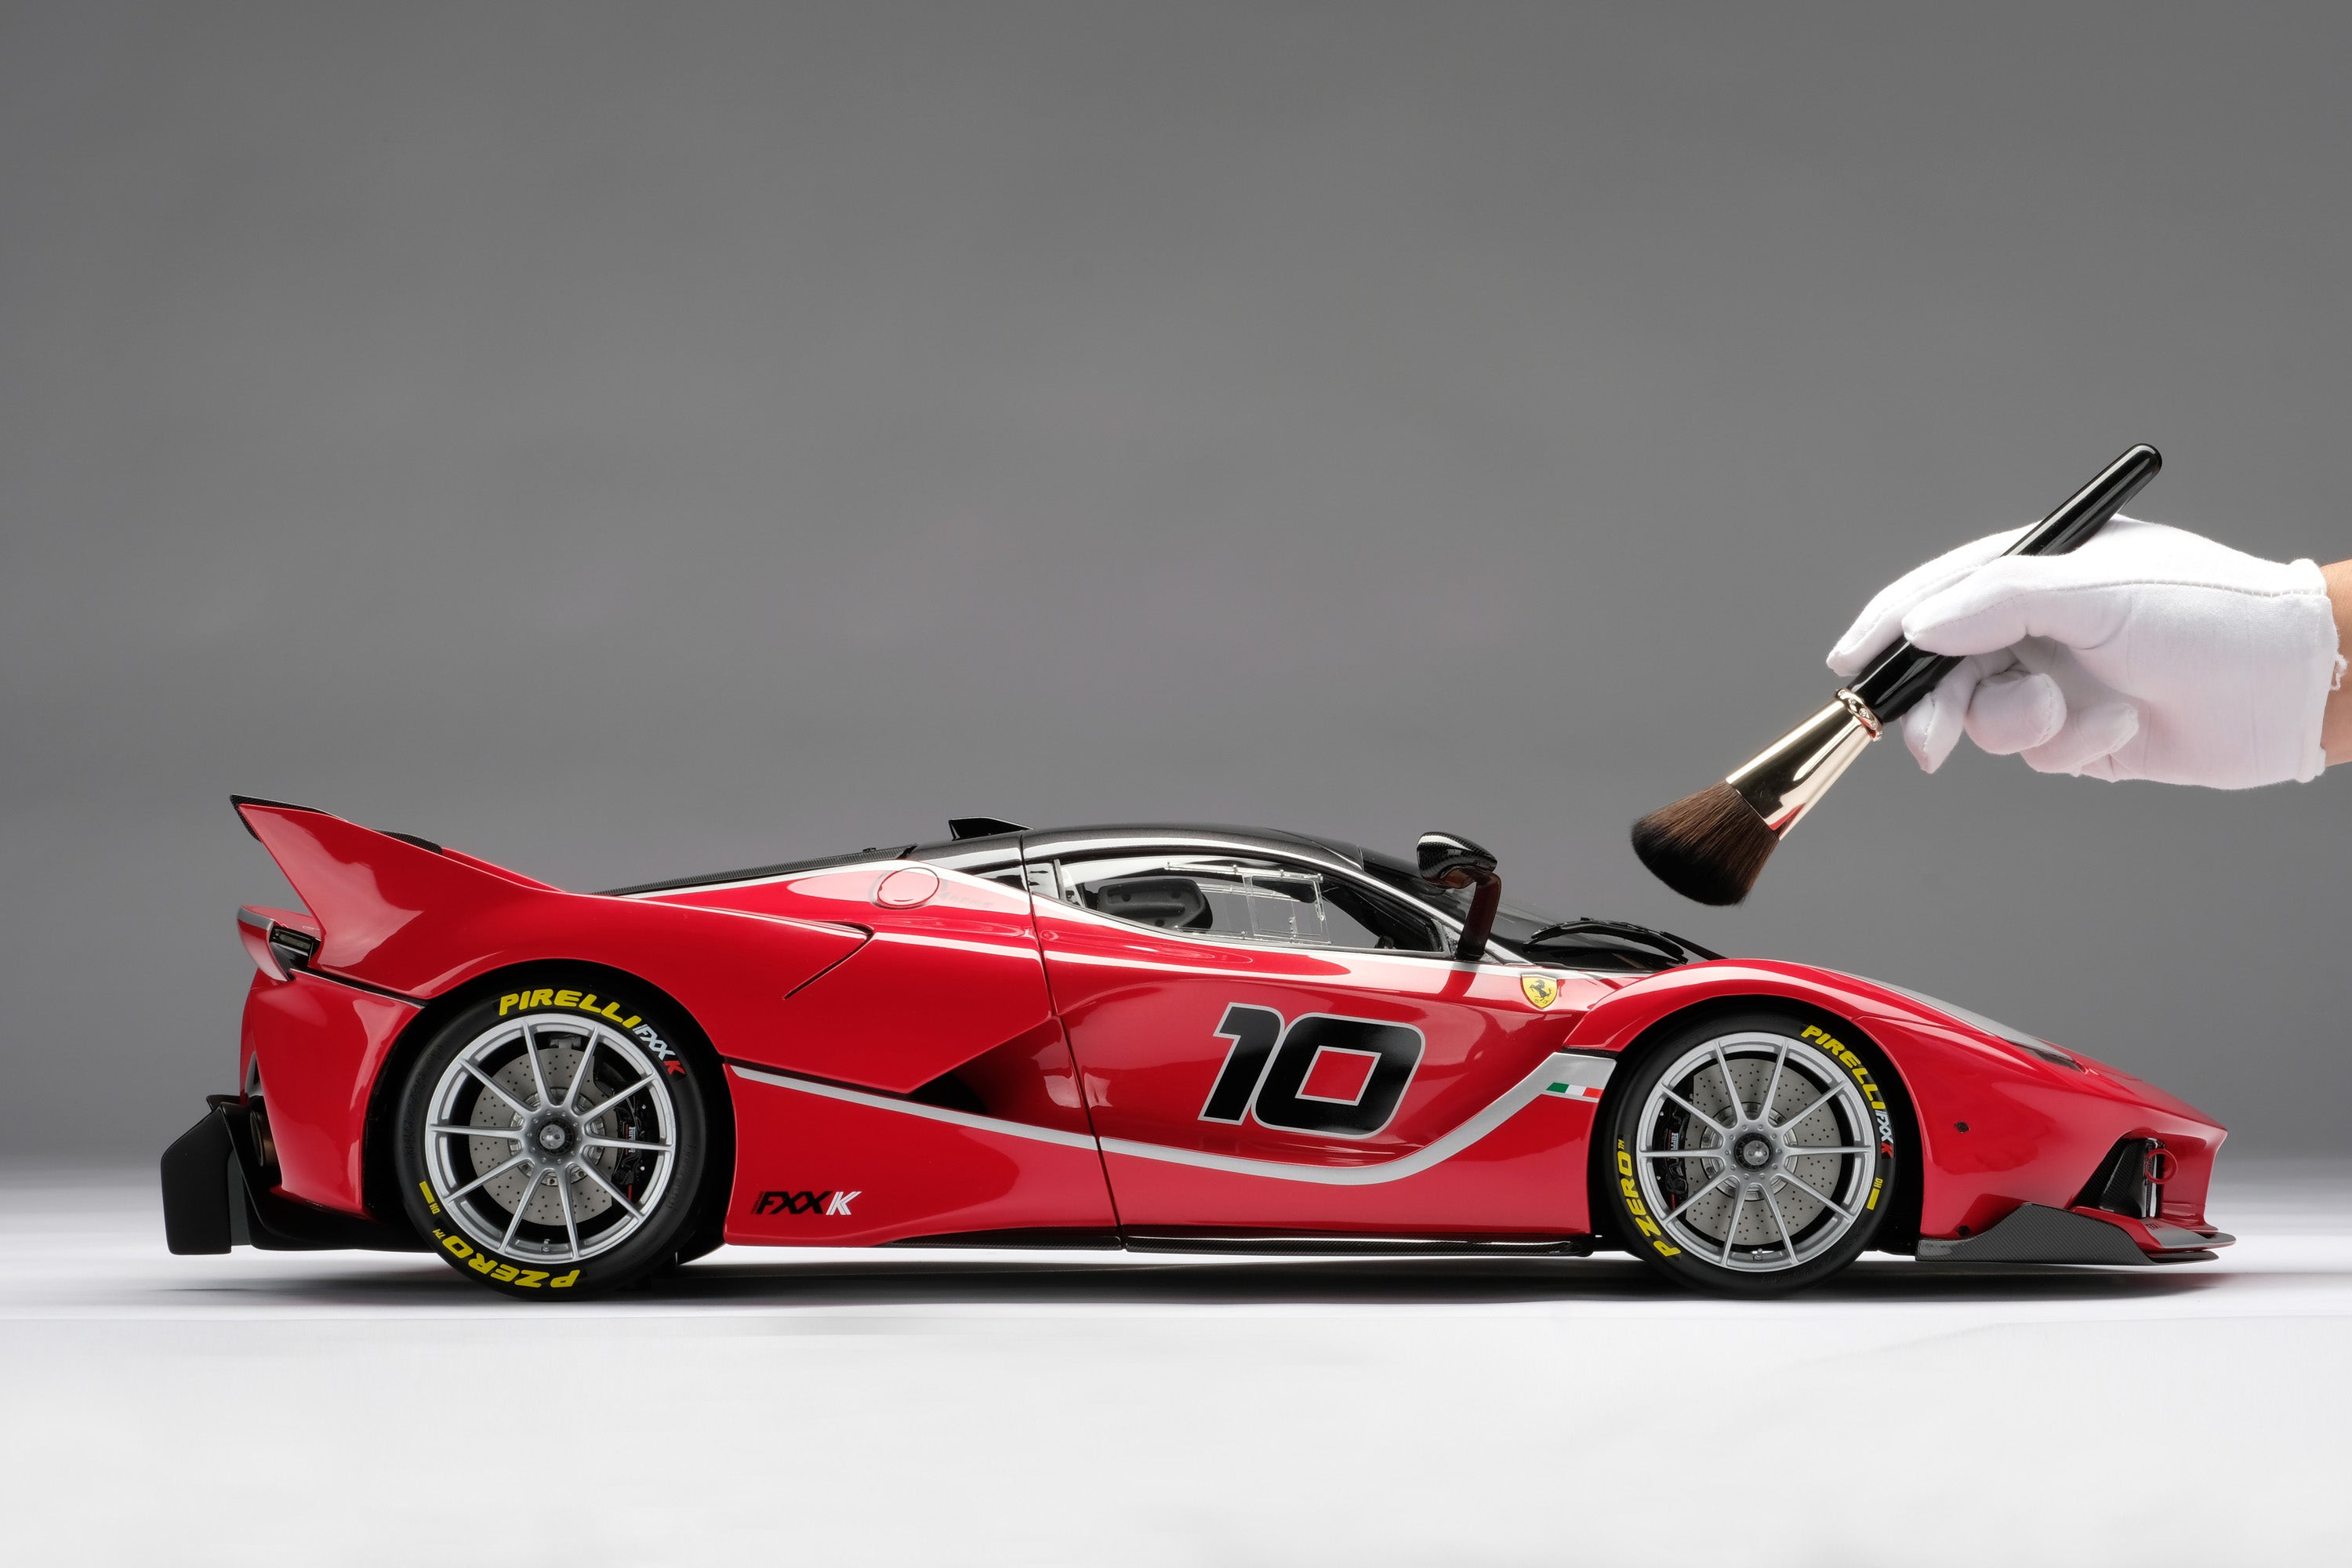 セールAMALGAM FERRARI FXX K 2014 アマルガムフェラーリ FXX K スーパーカー人気合金模型車ミニカーコレクション1:8スケール S56 レーシングカー